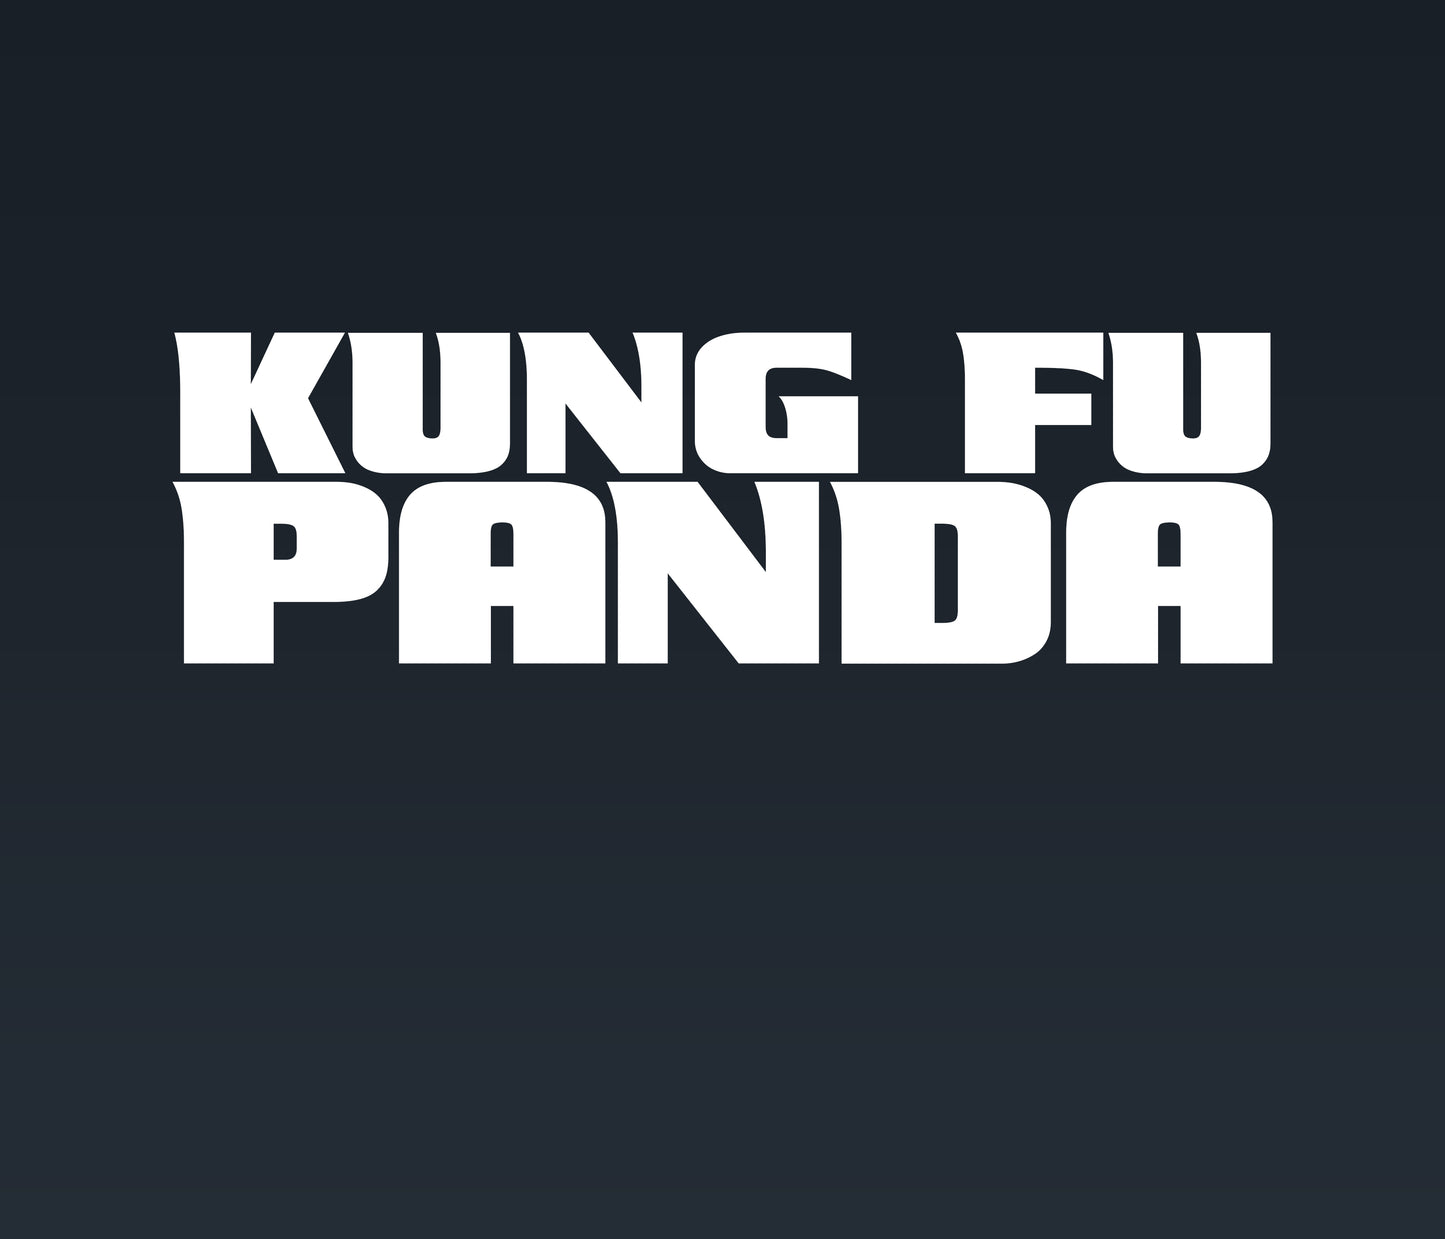 Kung Fu Panda 4 Font: Bold and Playful